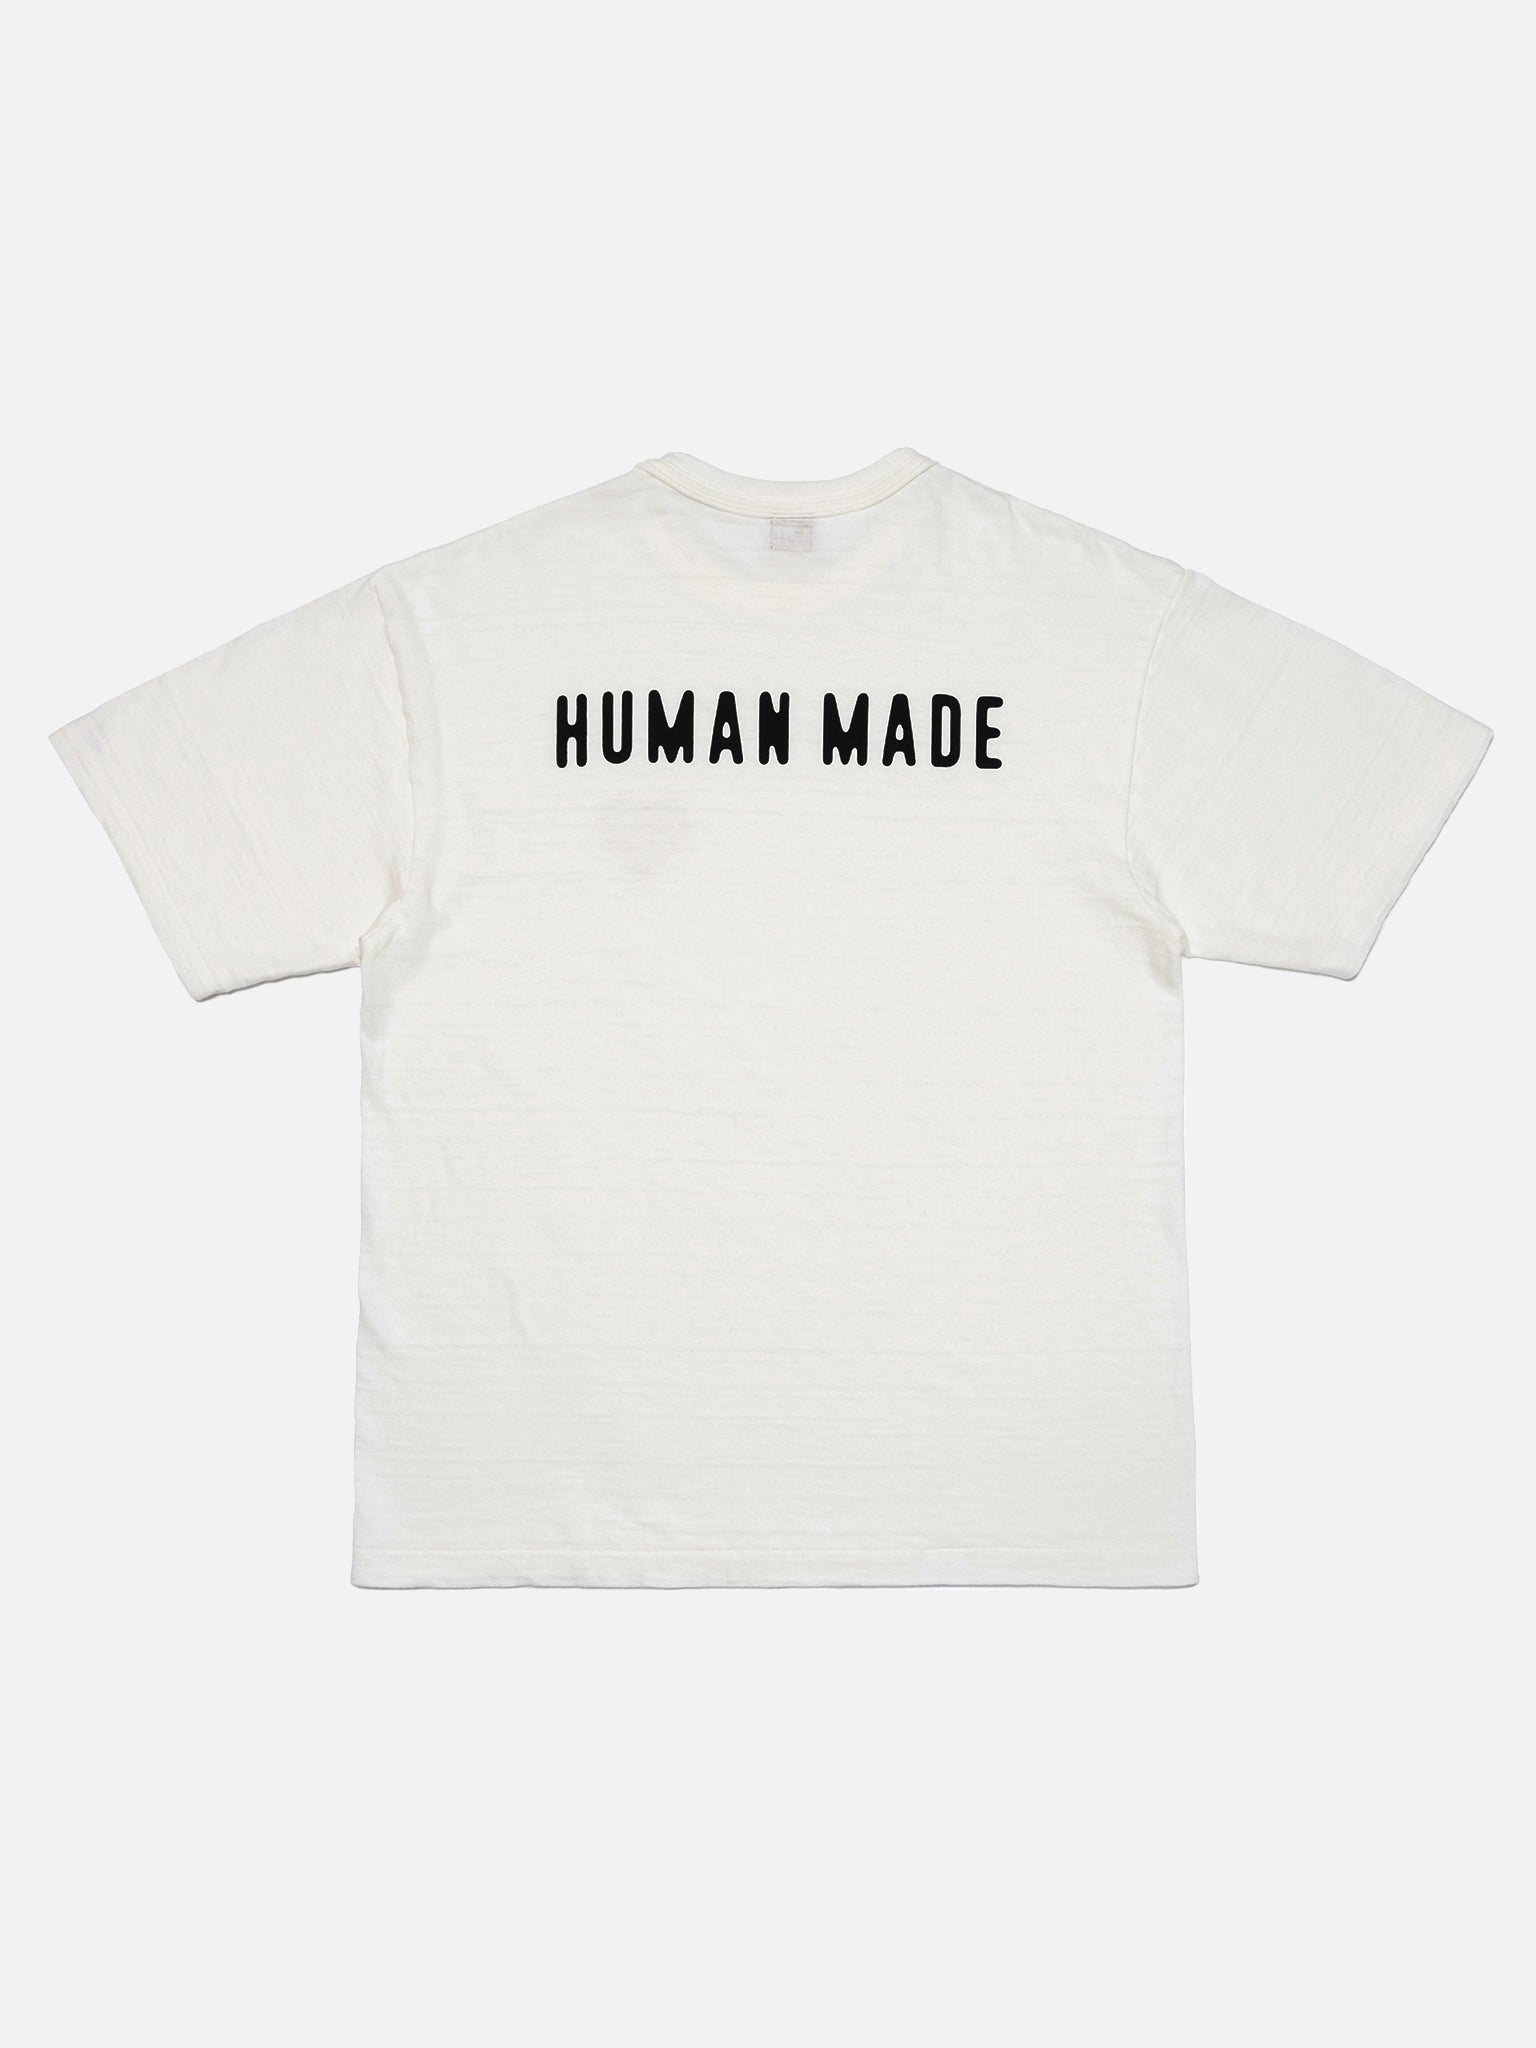 ラッピング無料！返品も保証 HUMAN MADE Graphic T-Shirt White M